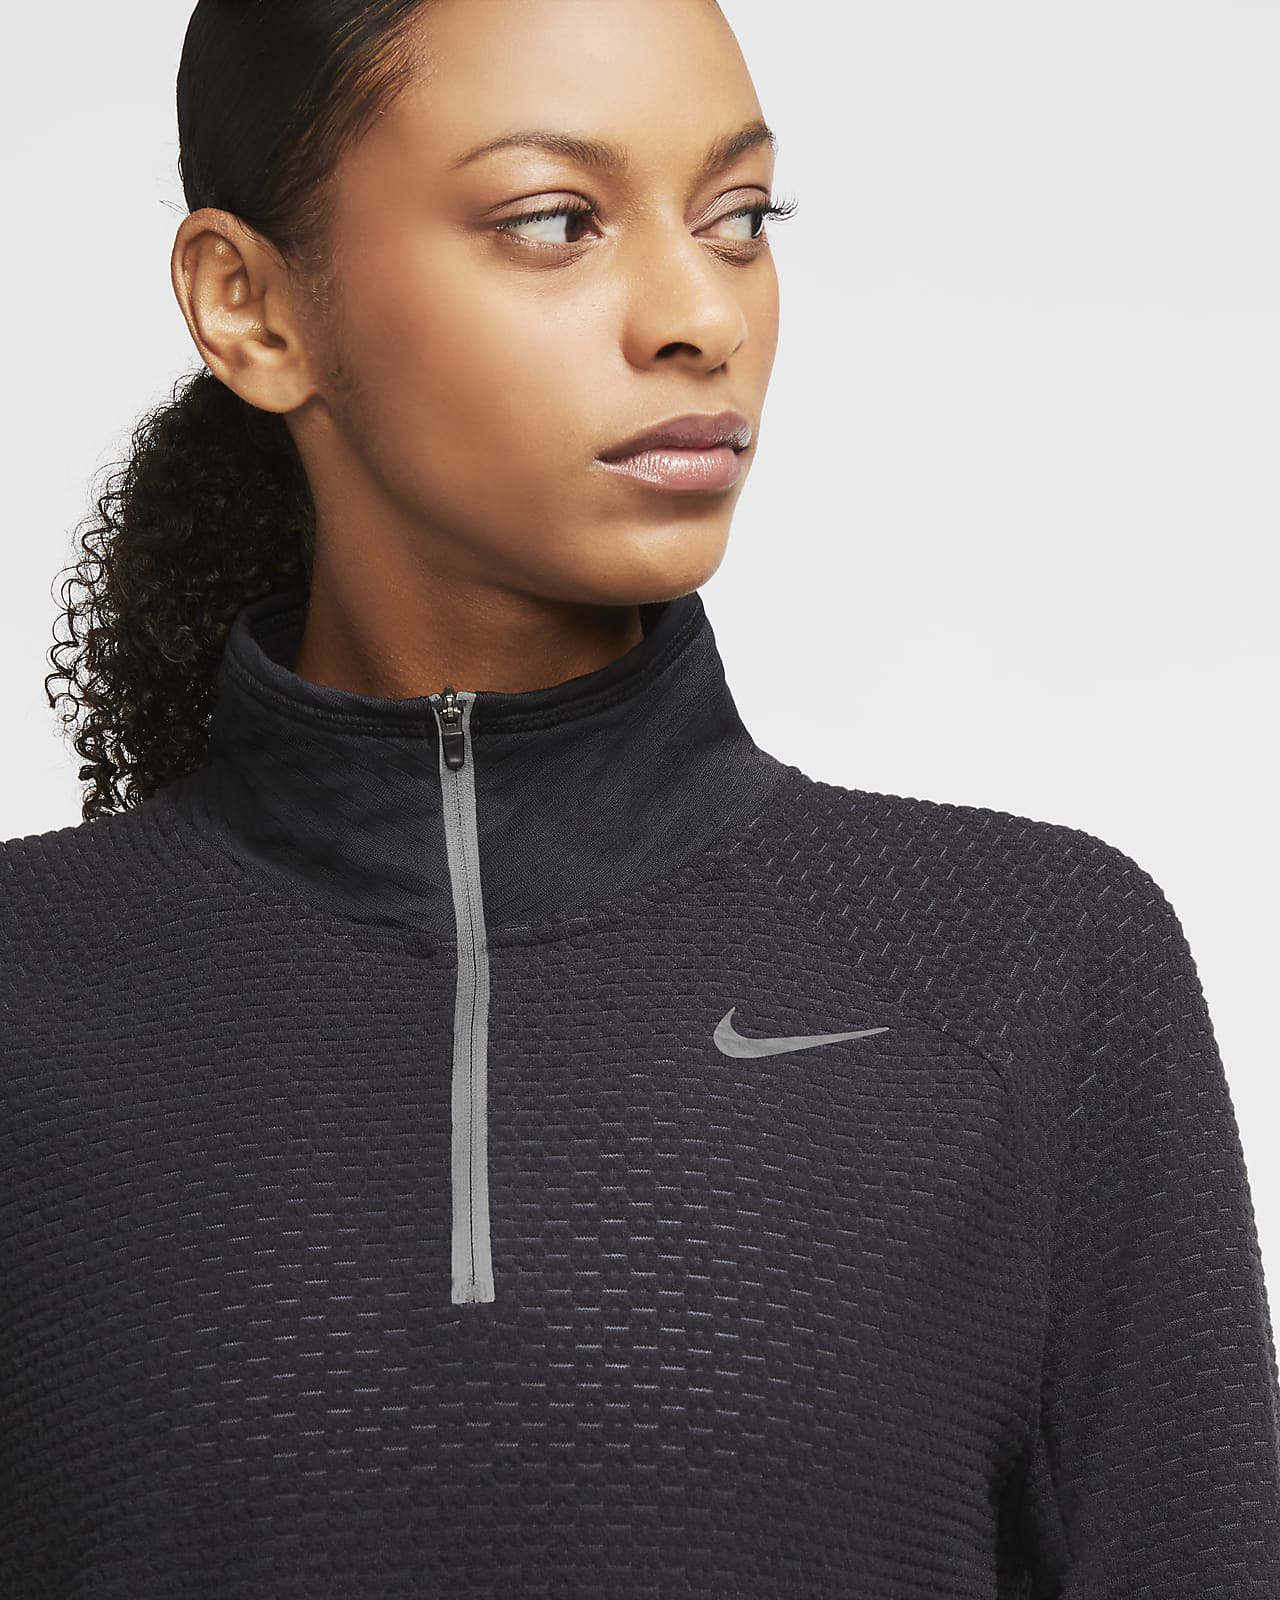 Nike Sphere Women's 1/2-Zip Running Top 